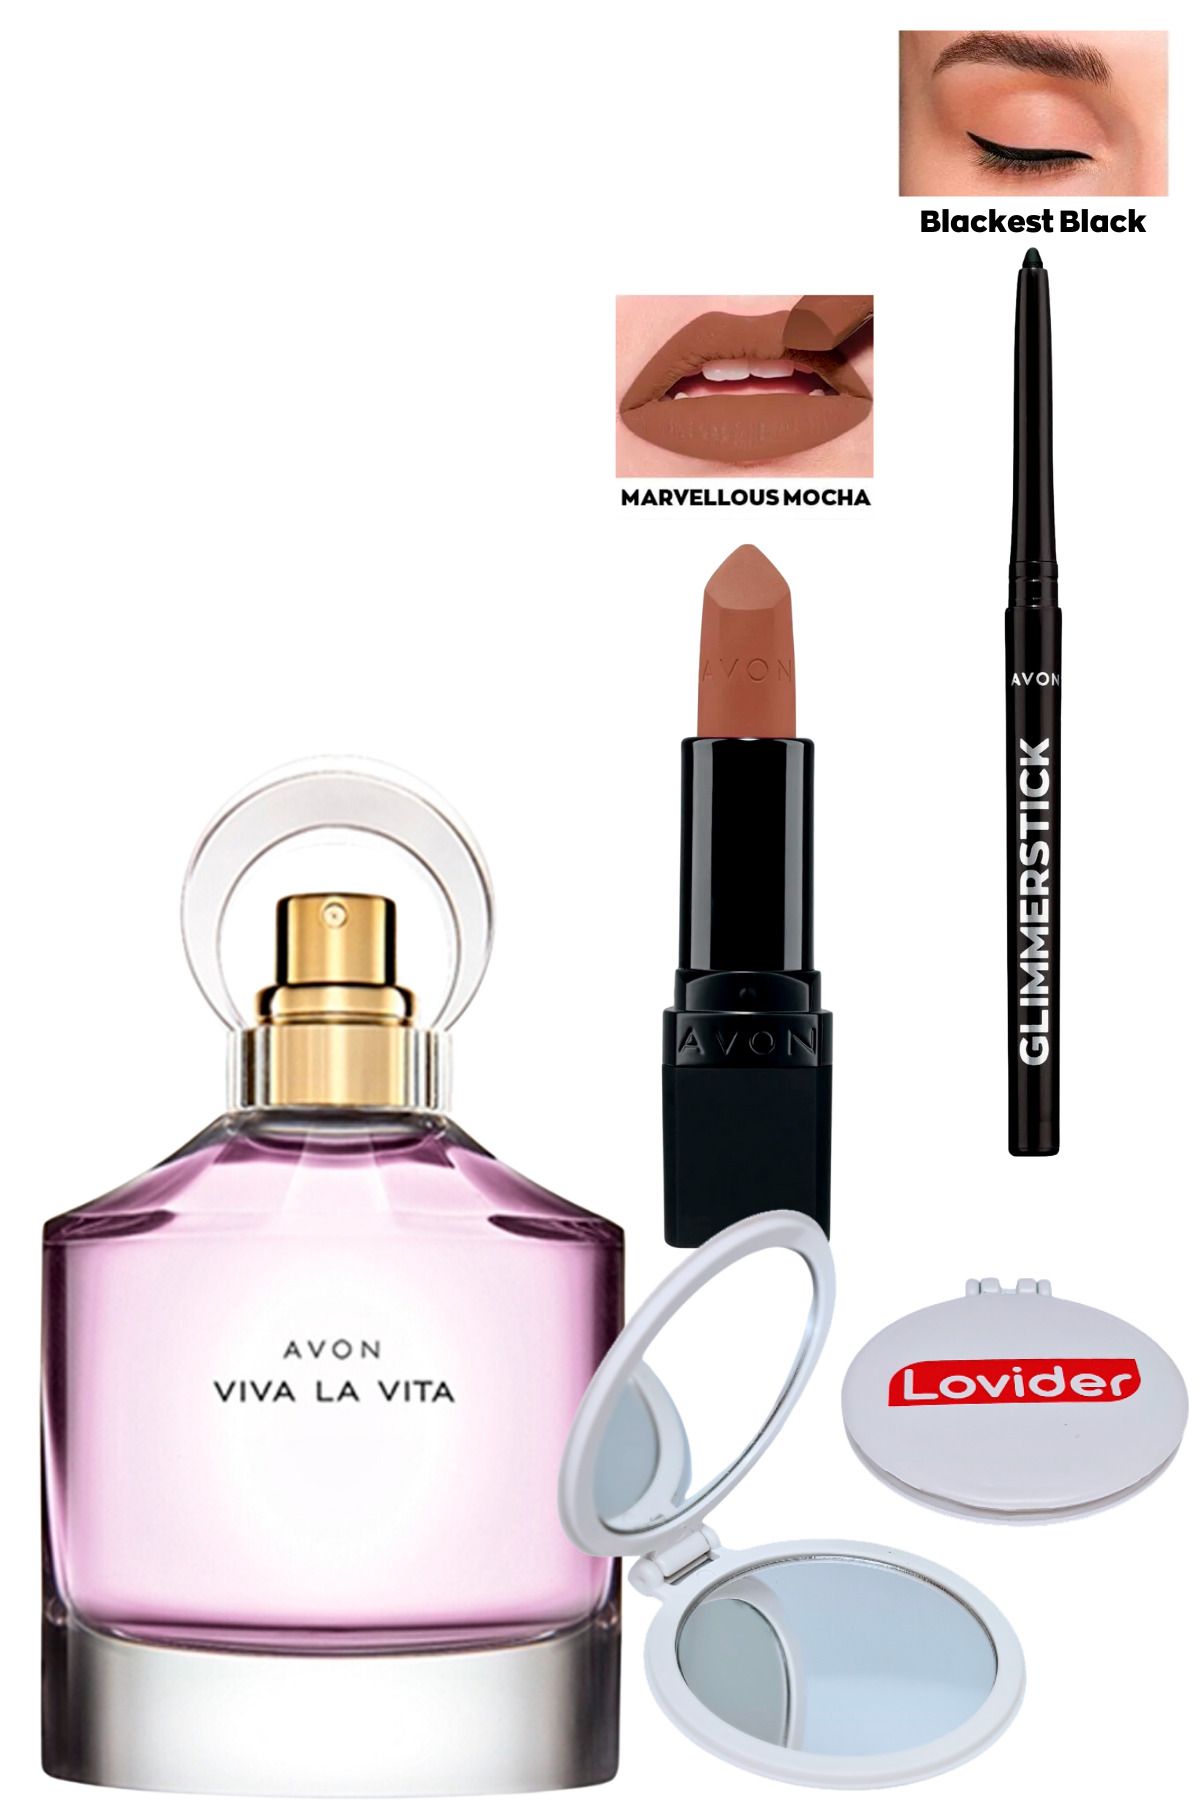 Avon Viva La Vita Kadın Parfüm EDP 50ml + Marvellous Mocha Ruj + Siyah Göz Kalemi + Lovider Cep Aynası